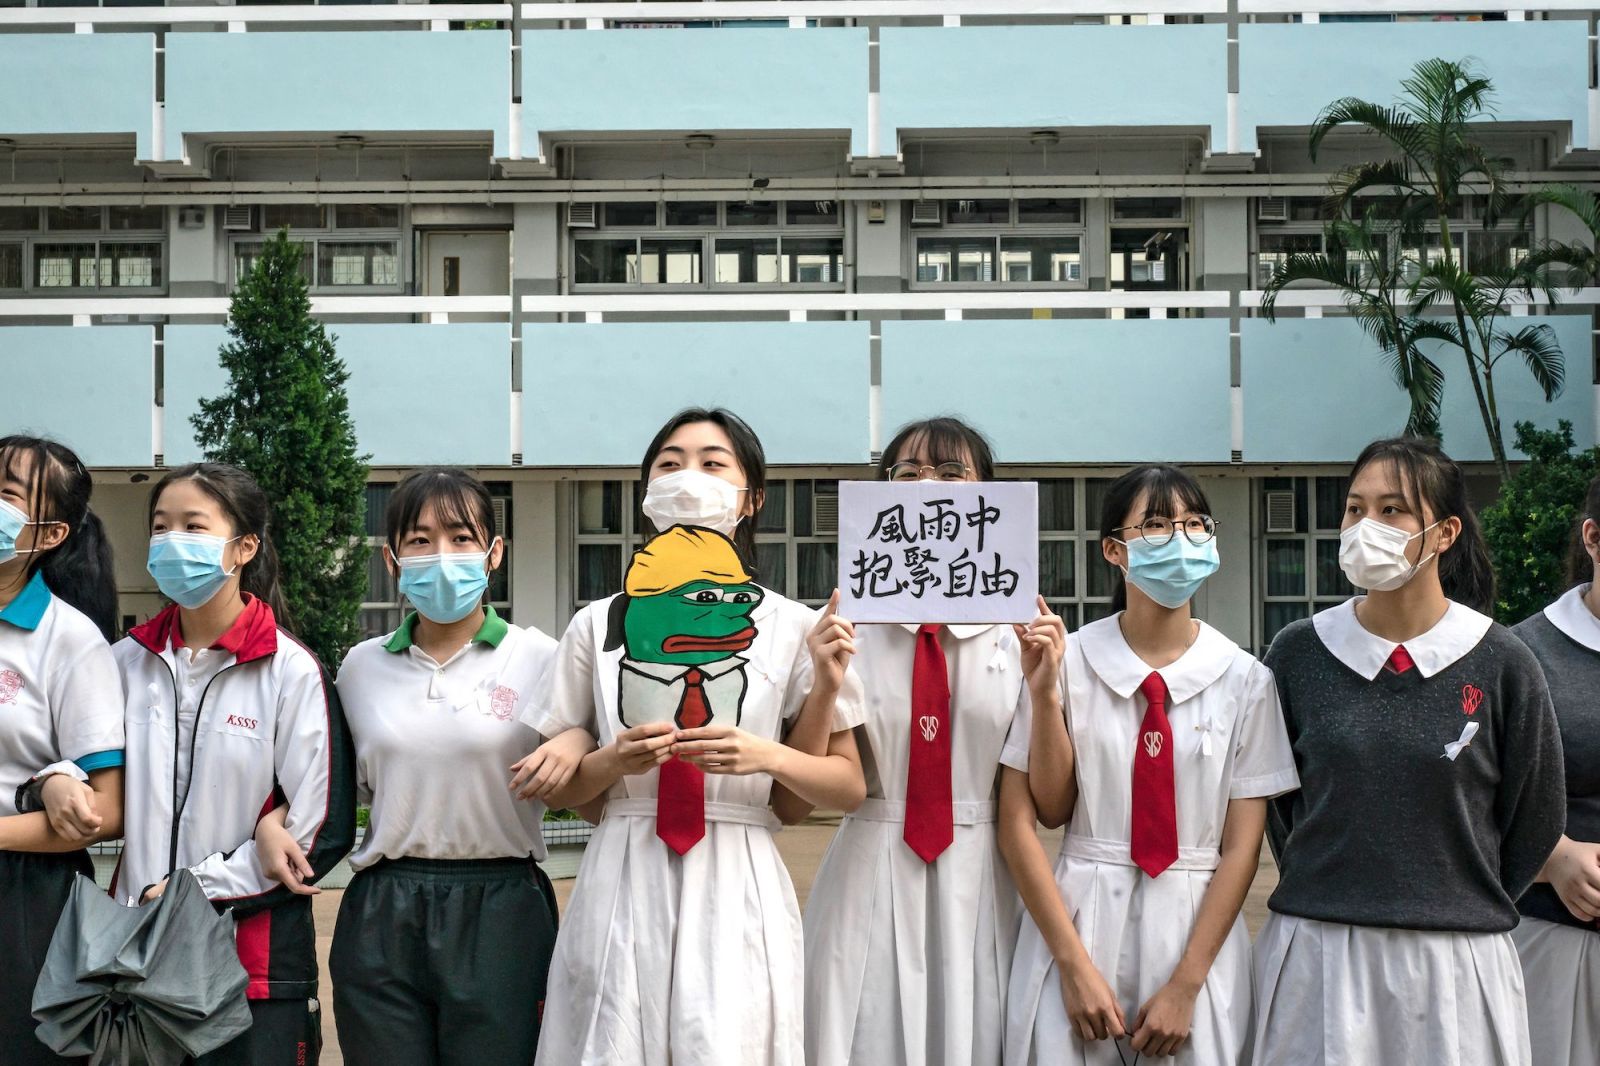 Studenti v Hongkongu vytvořili lidský řetěz. Pokračují v demonstracích proti čínské vládě